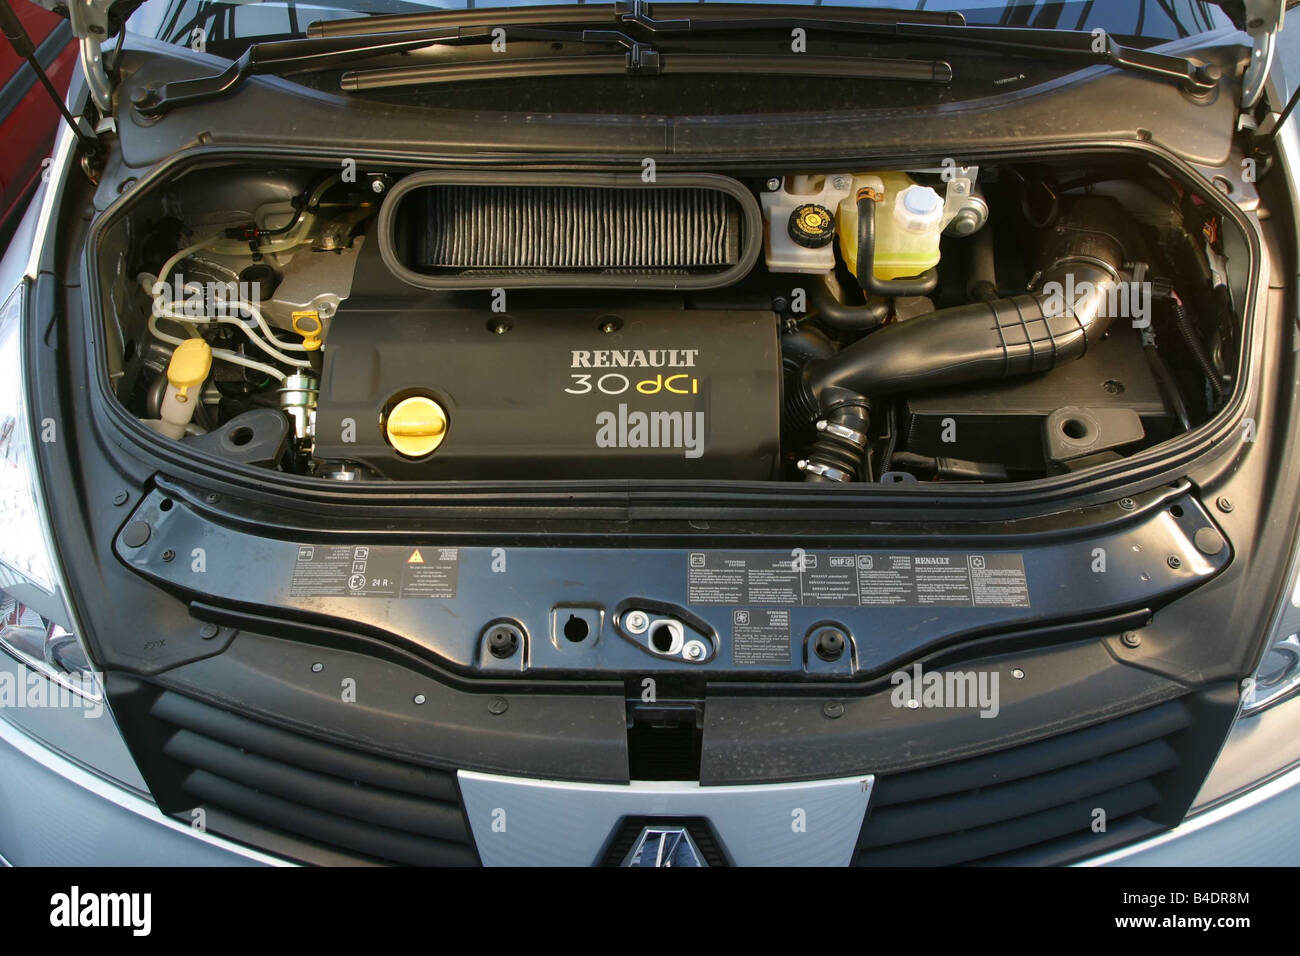 Voiture, Renault Grand Espace, Van, l'année de modèle 2002, d'argent, vue  dans le compartiment moteur, moteur, la technique/accessoire, accessoires  Photo Stock - Alamy